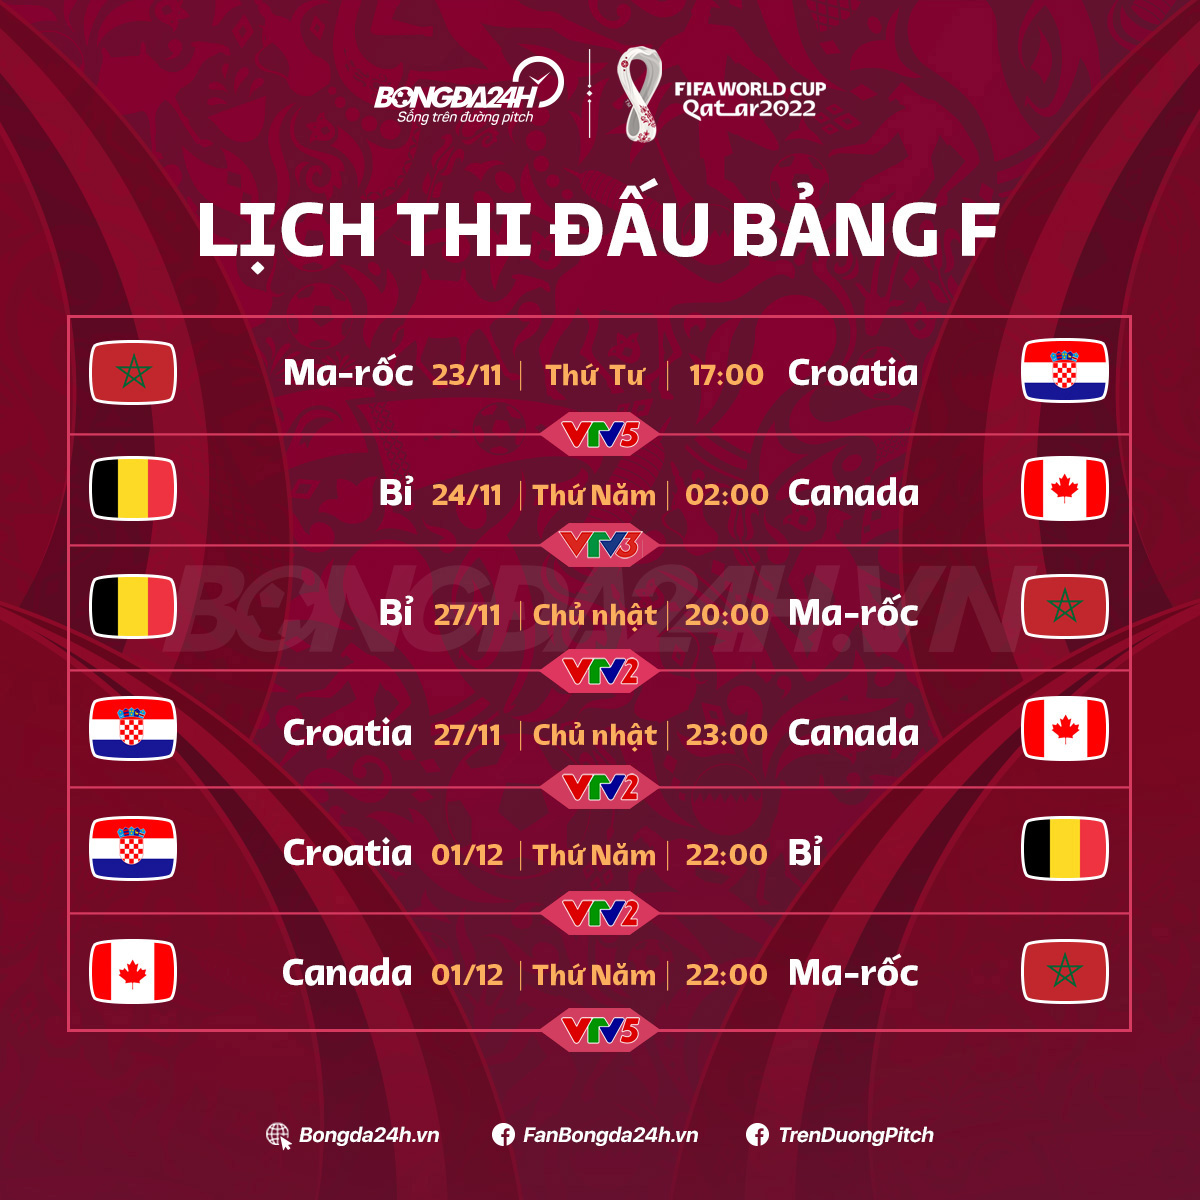 Lich thi dau bang F World Cup 2022